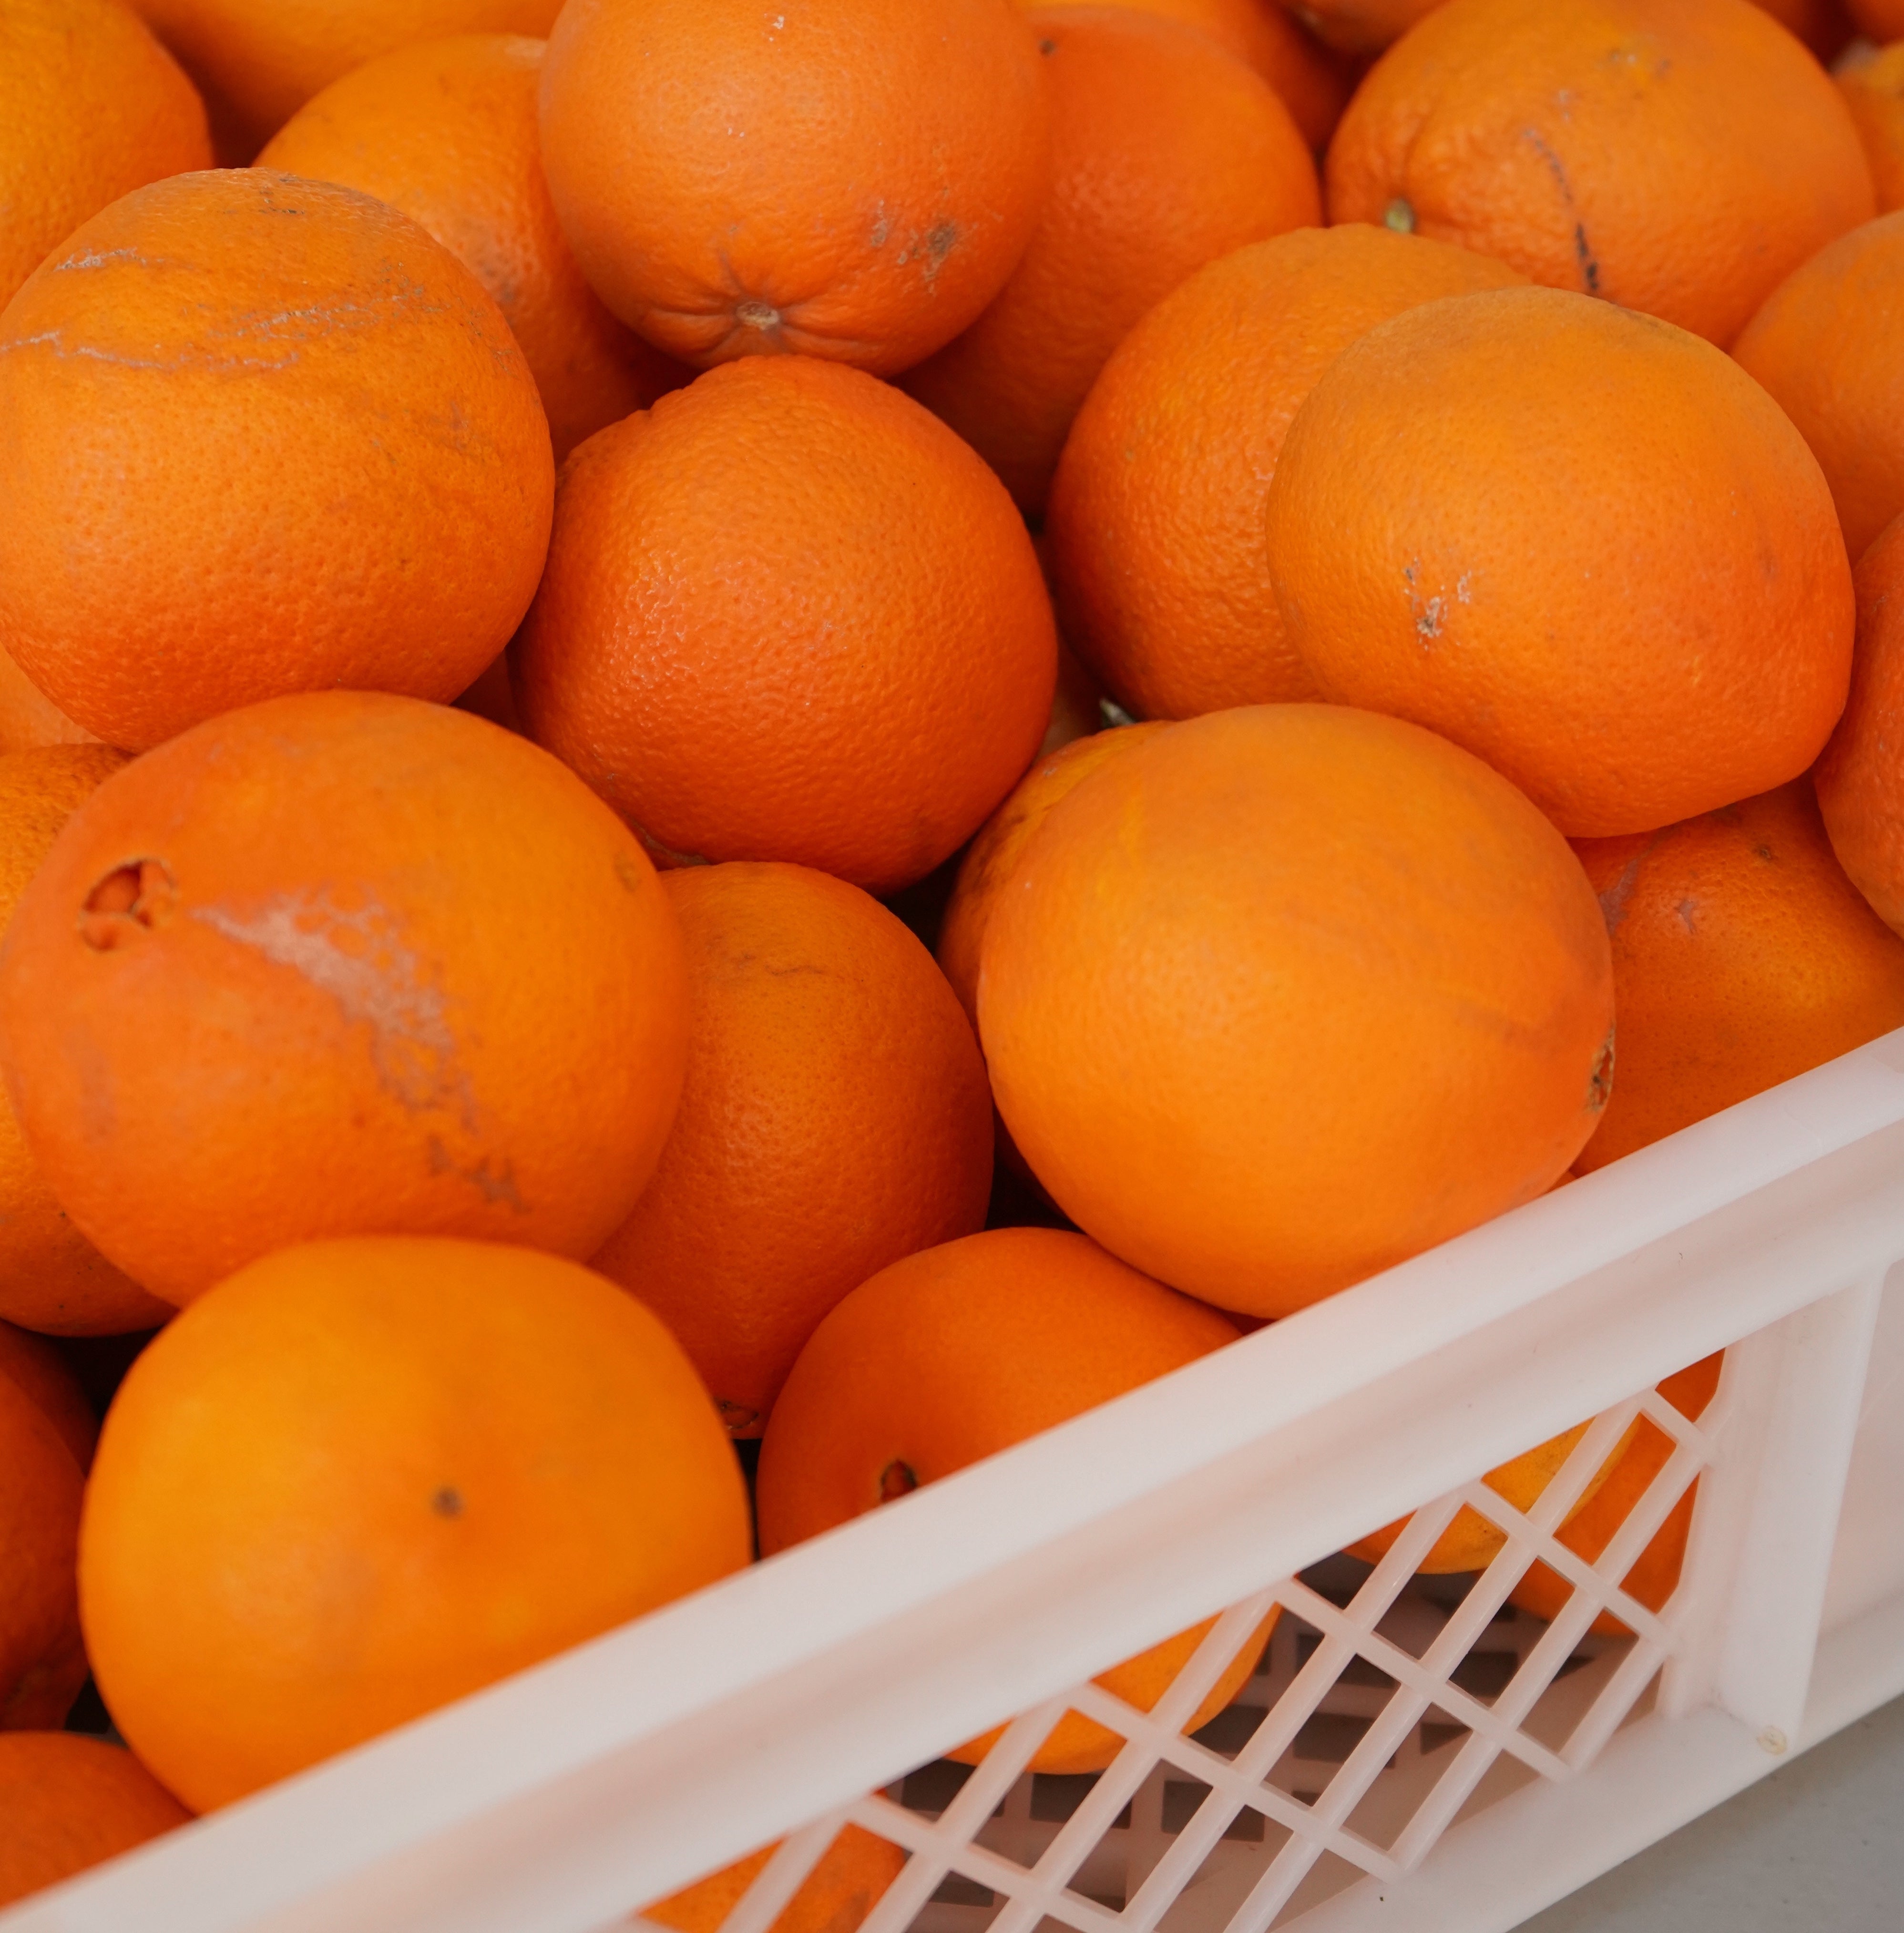 Varias naranjas ecológicas en caja de plástico blanca